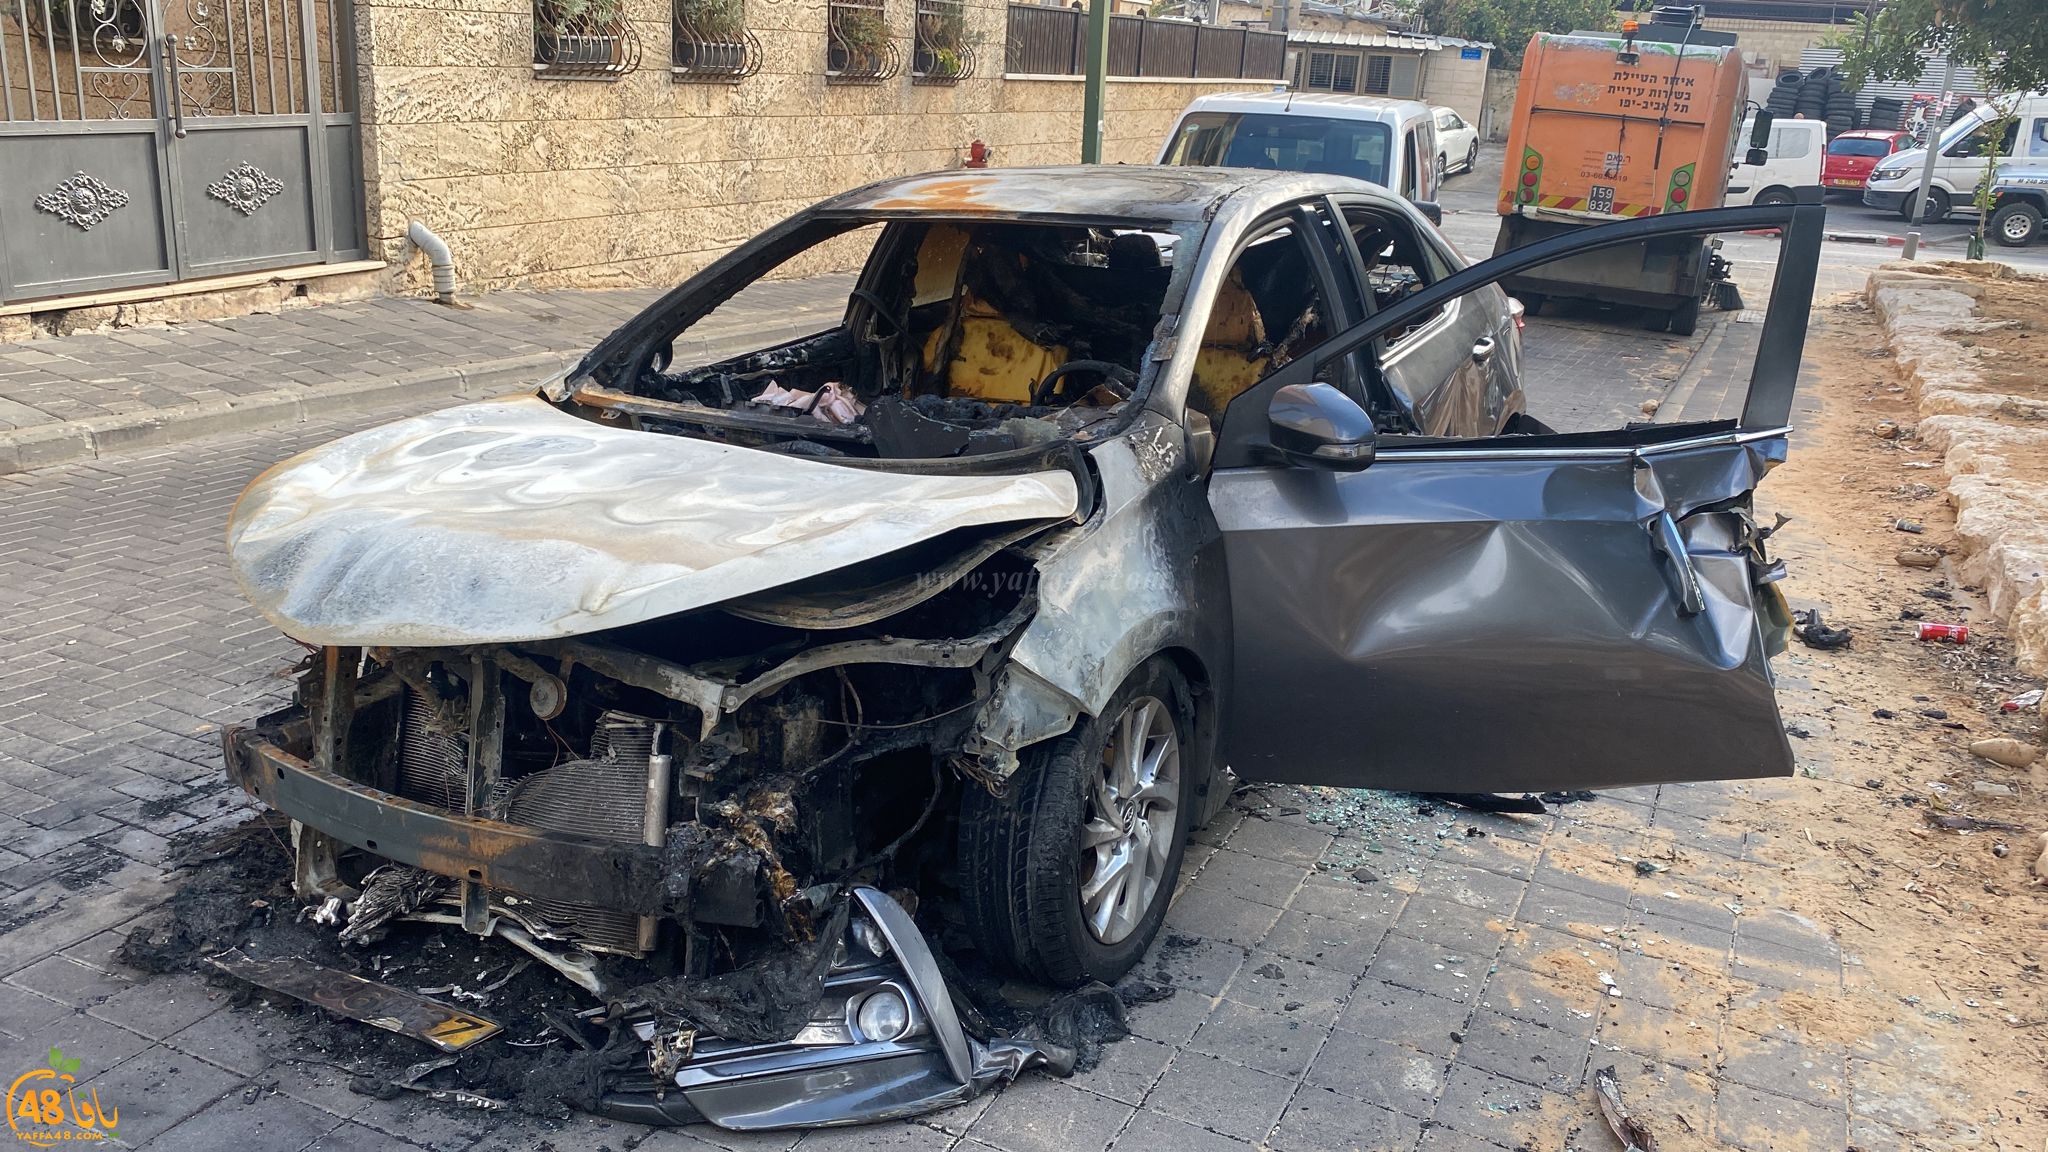  فجر اليوم - احراق سيارة في مدينة يافا 